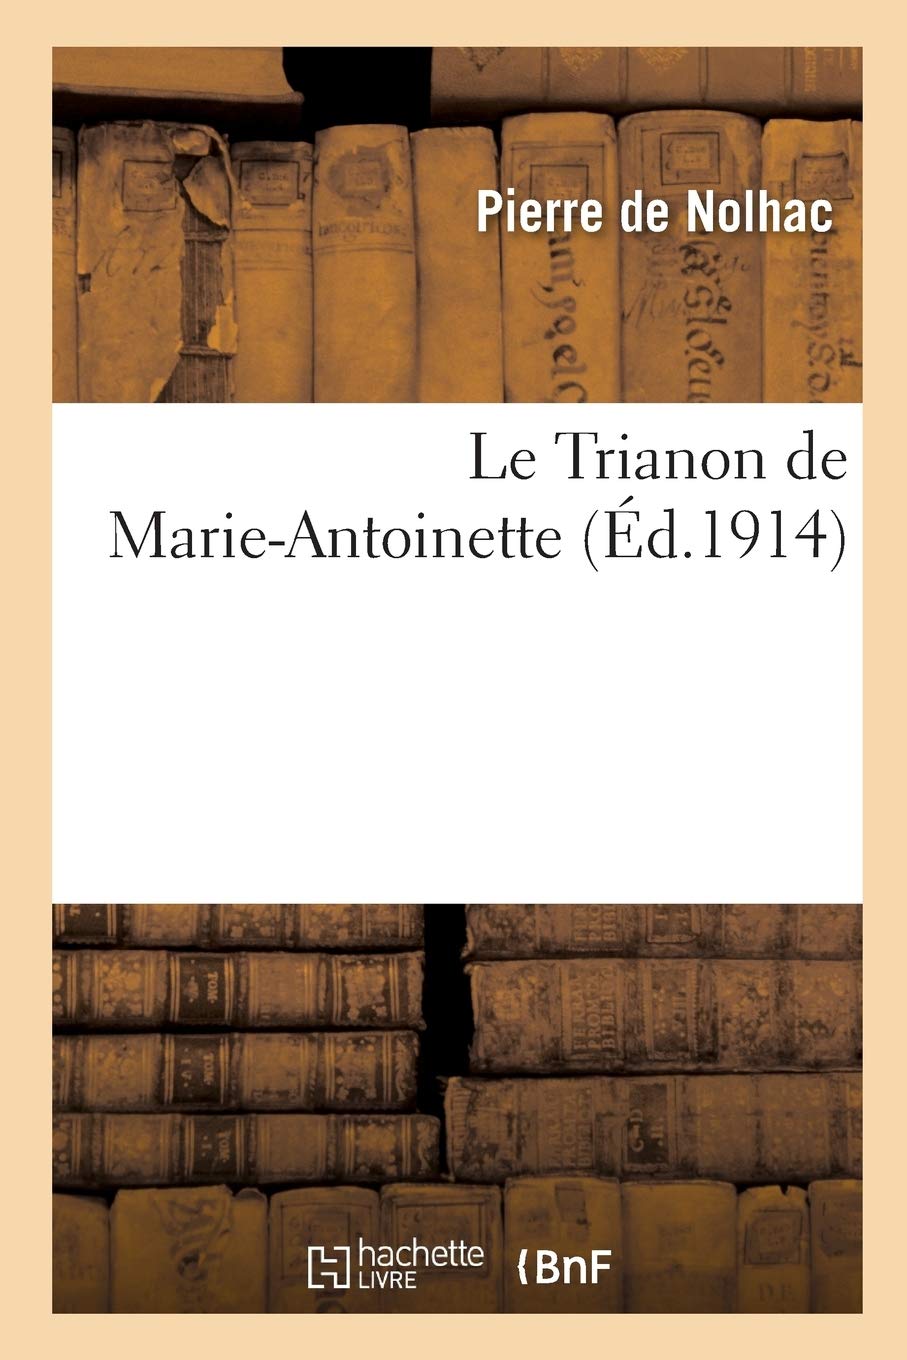 Marie-Antoinette. Les livres de Pierre de Nolhac 61x1wy10